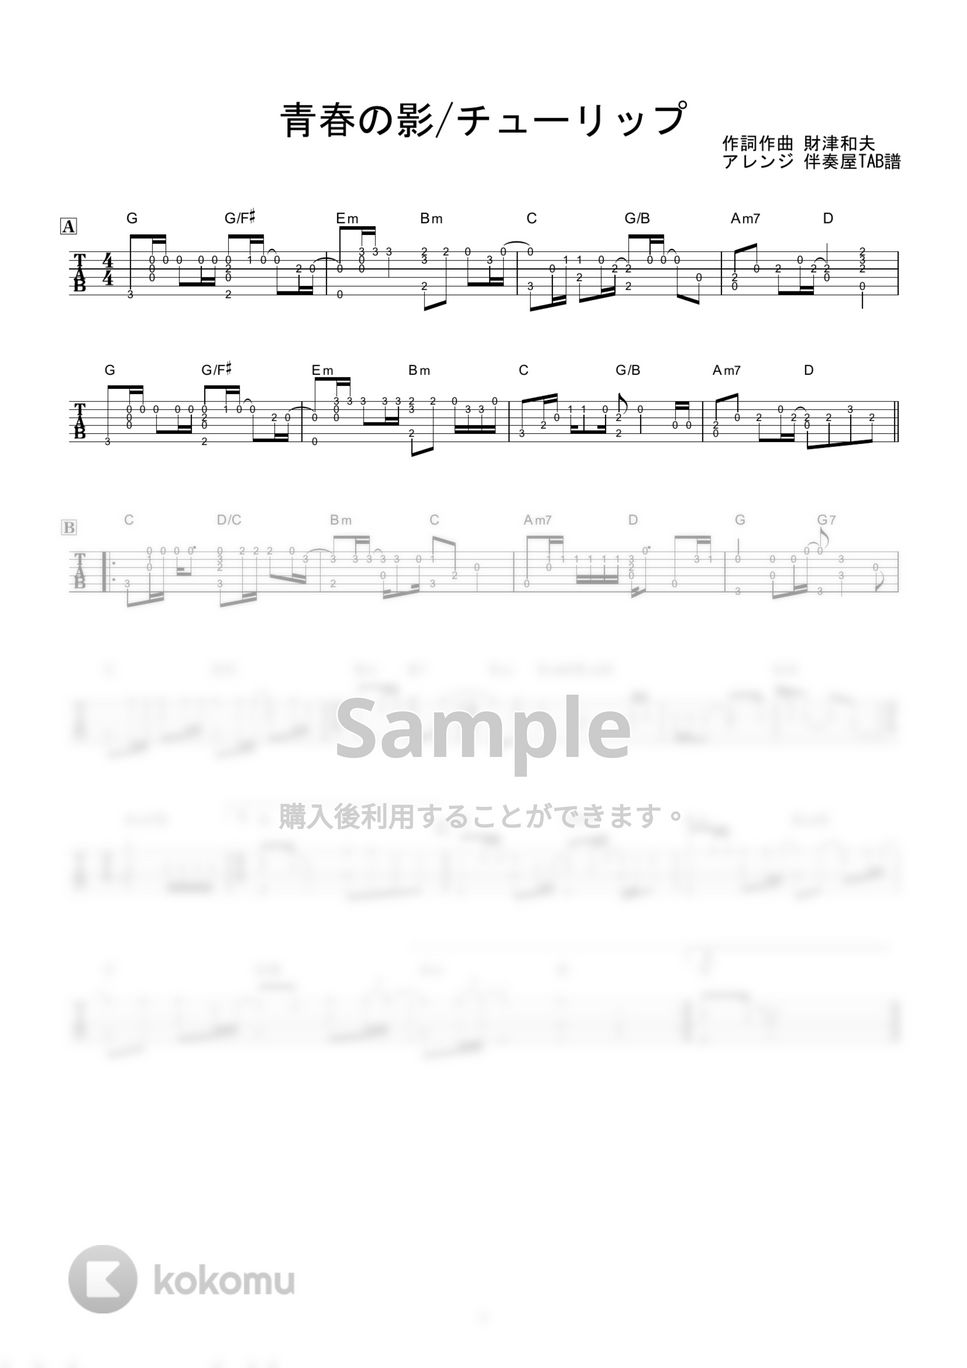 チューリップ - 青春の影 (ソロギター) by 伴奏屋TAB譜